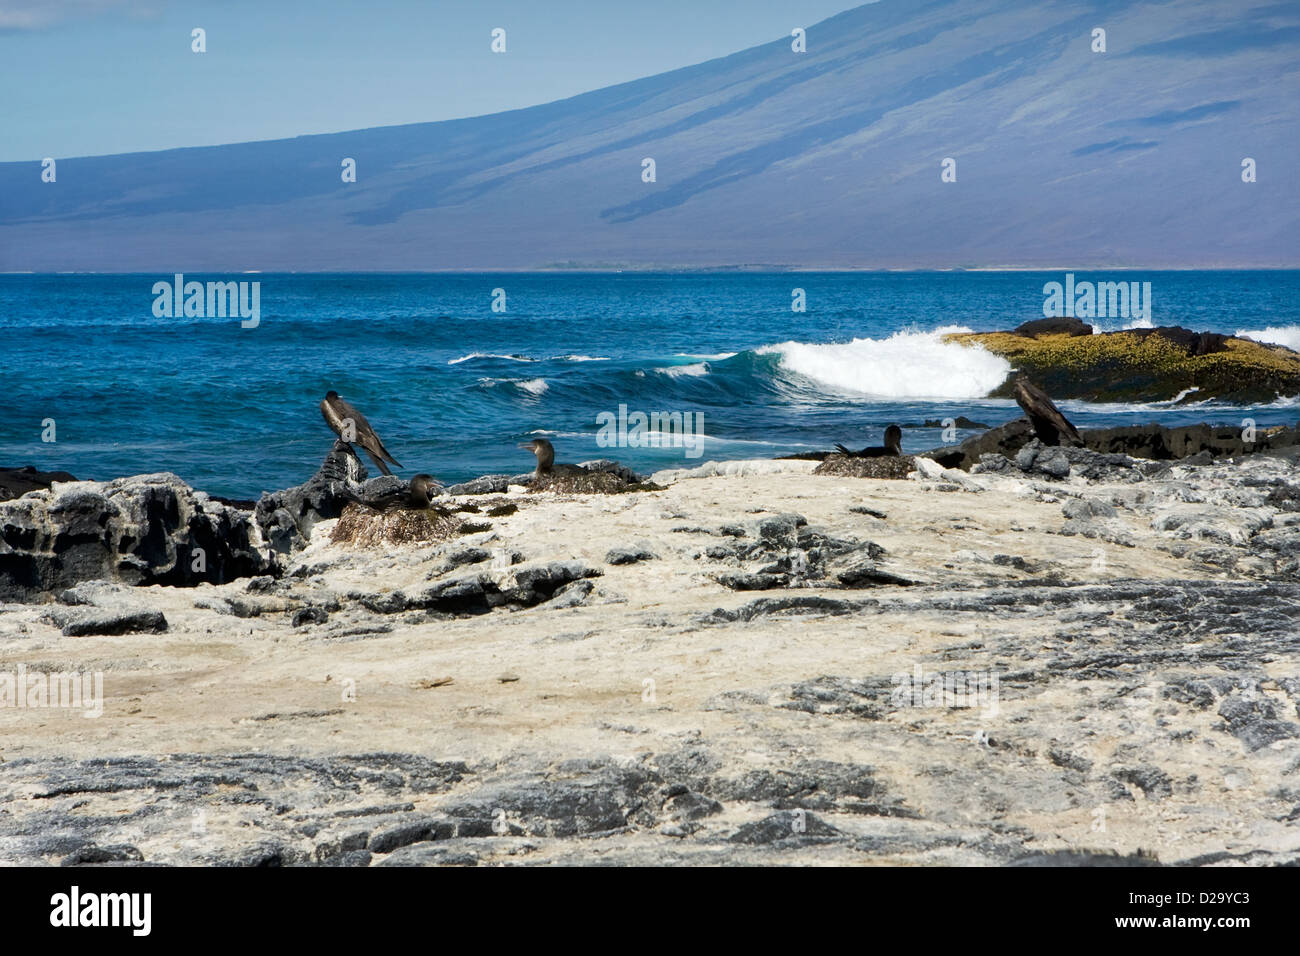 Nesting birds on a Galapagos Island beach, Ecuador, South America Stock Photo